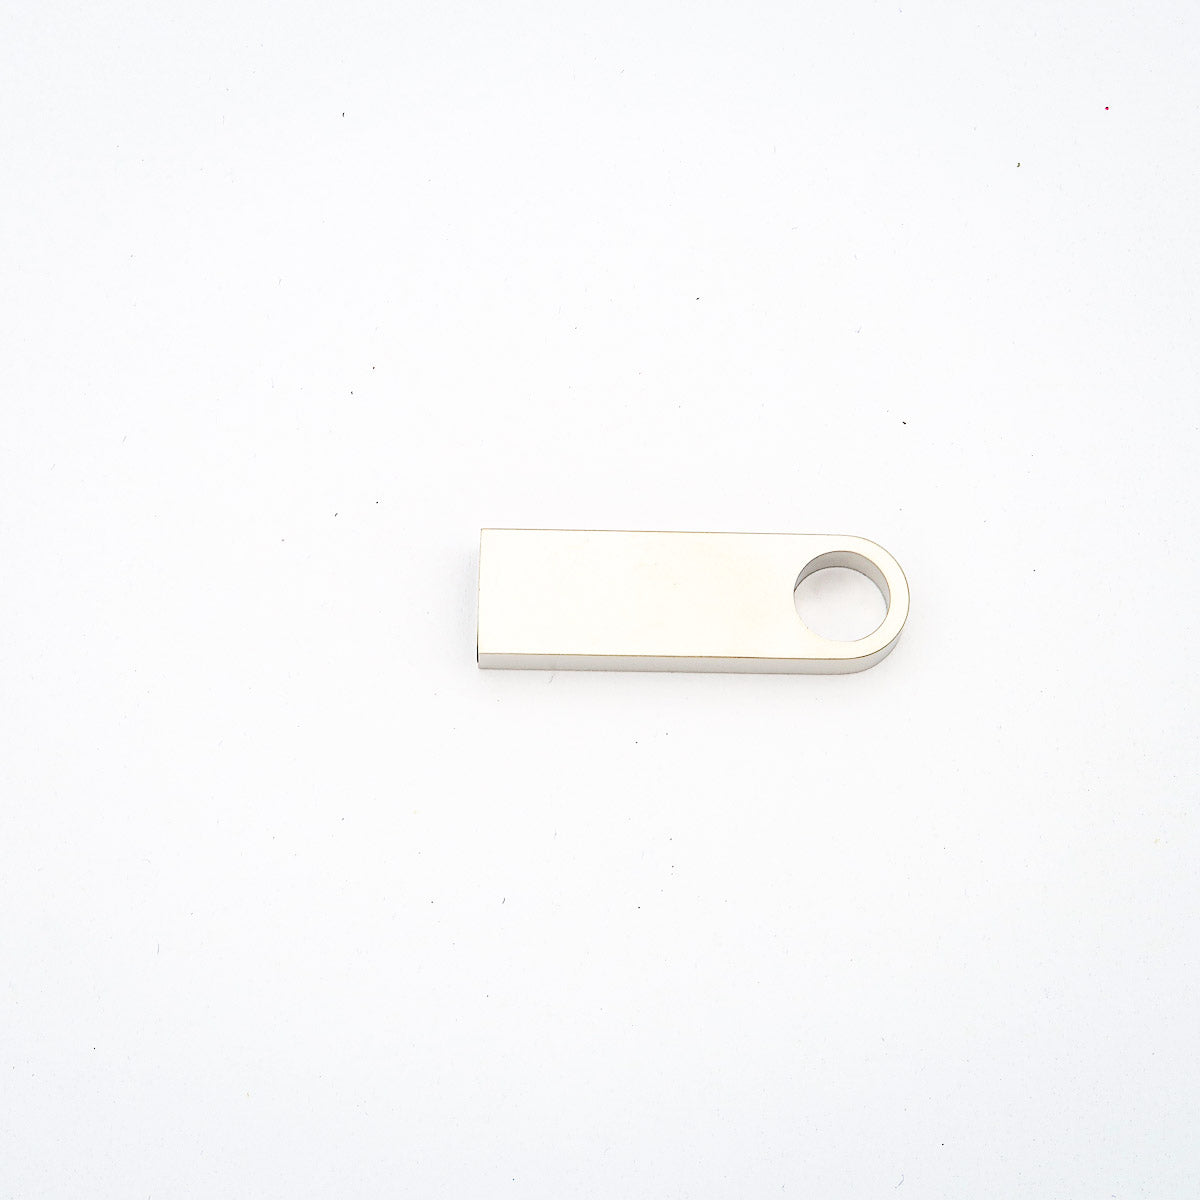 USB -tikku, joka on räätälöity kaiverruksella nimestä tai logosta